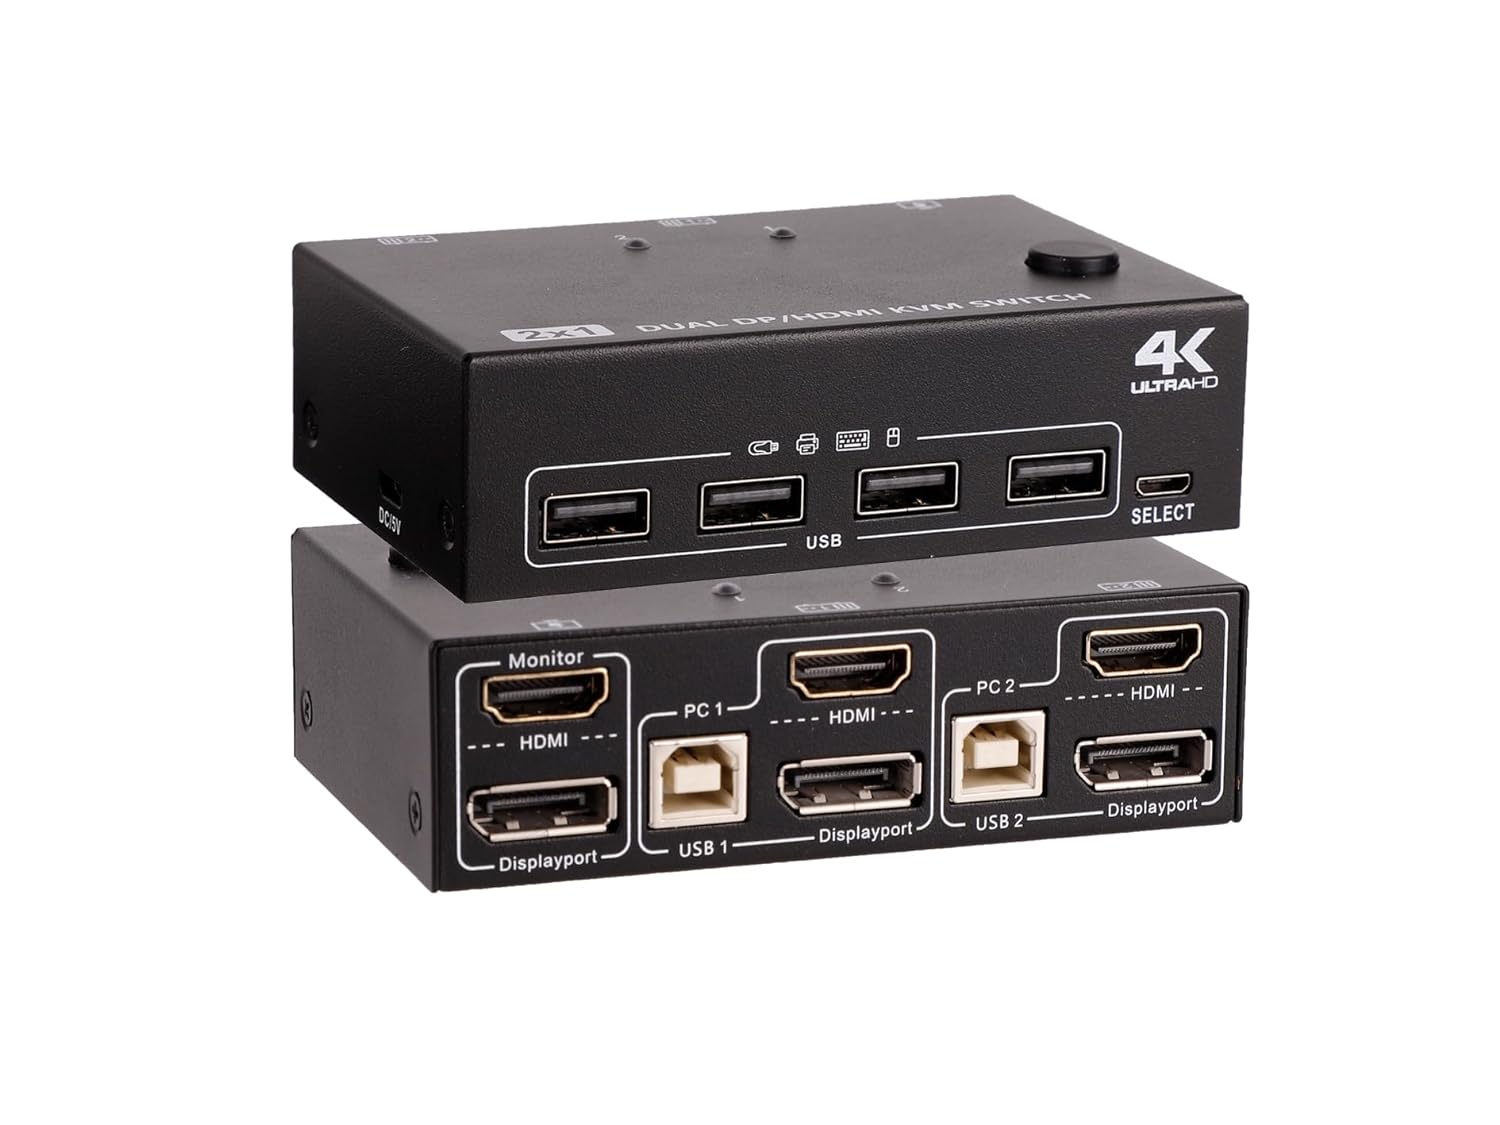 【200円クーポン券付】 DP HDMI HDMIスイッチ KVM切替器 2入力2出力 2台のPC 4K 60Hz 4USB2.0ハブ付 デュアルモニター切替器 電源不要 マウス キーボードを共有切替器